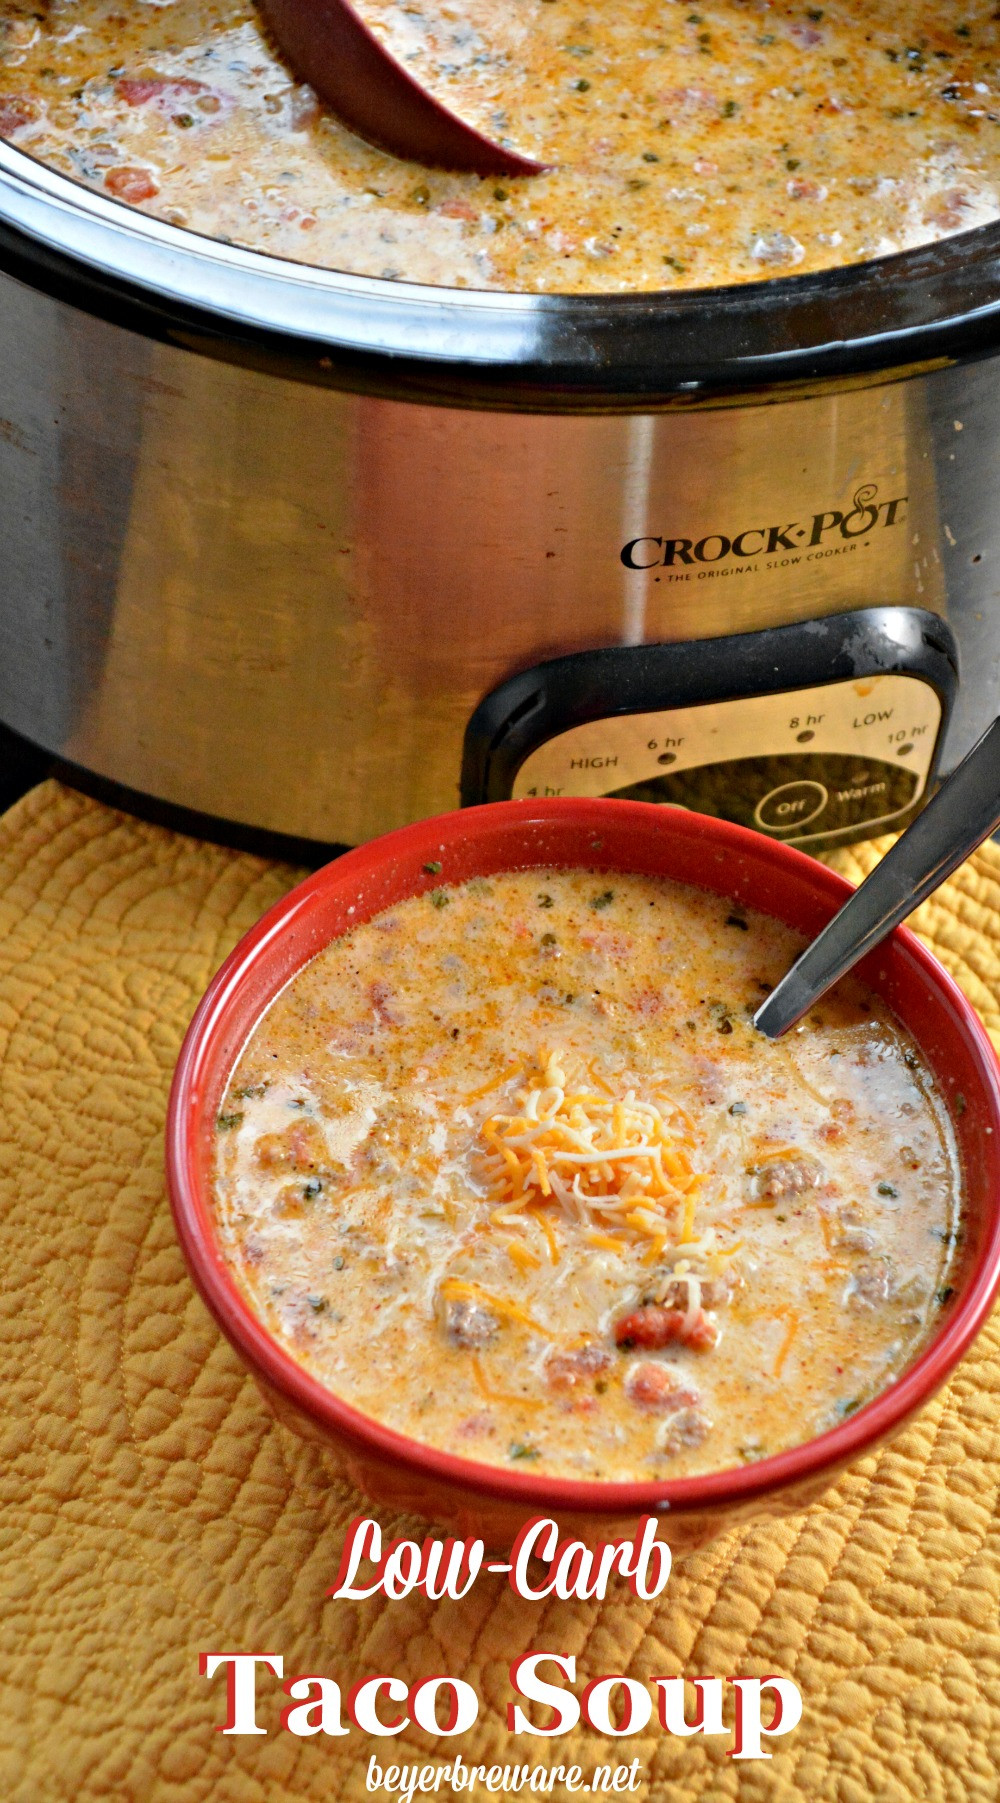 Crock Pot Keto Soup Recipes
 Crock Pot Low Carb Taco Soup Beyer Beware